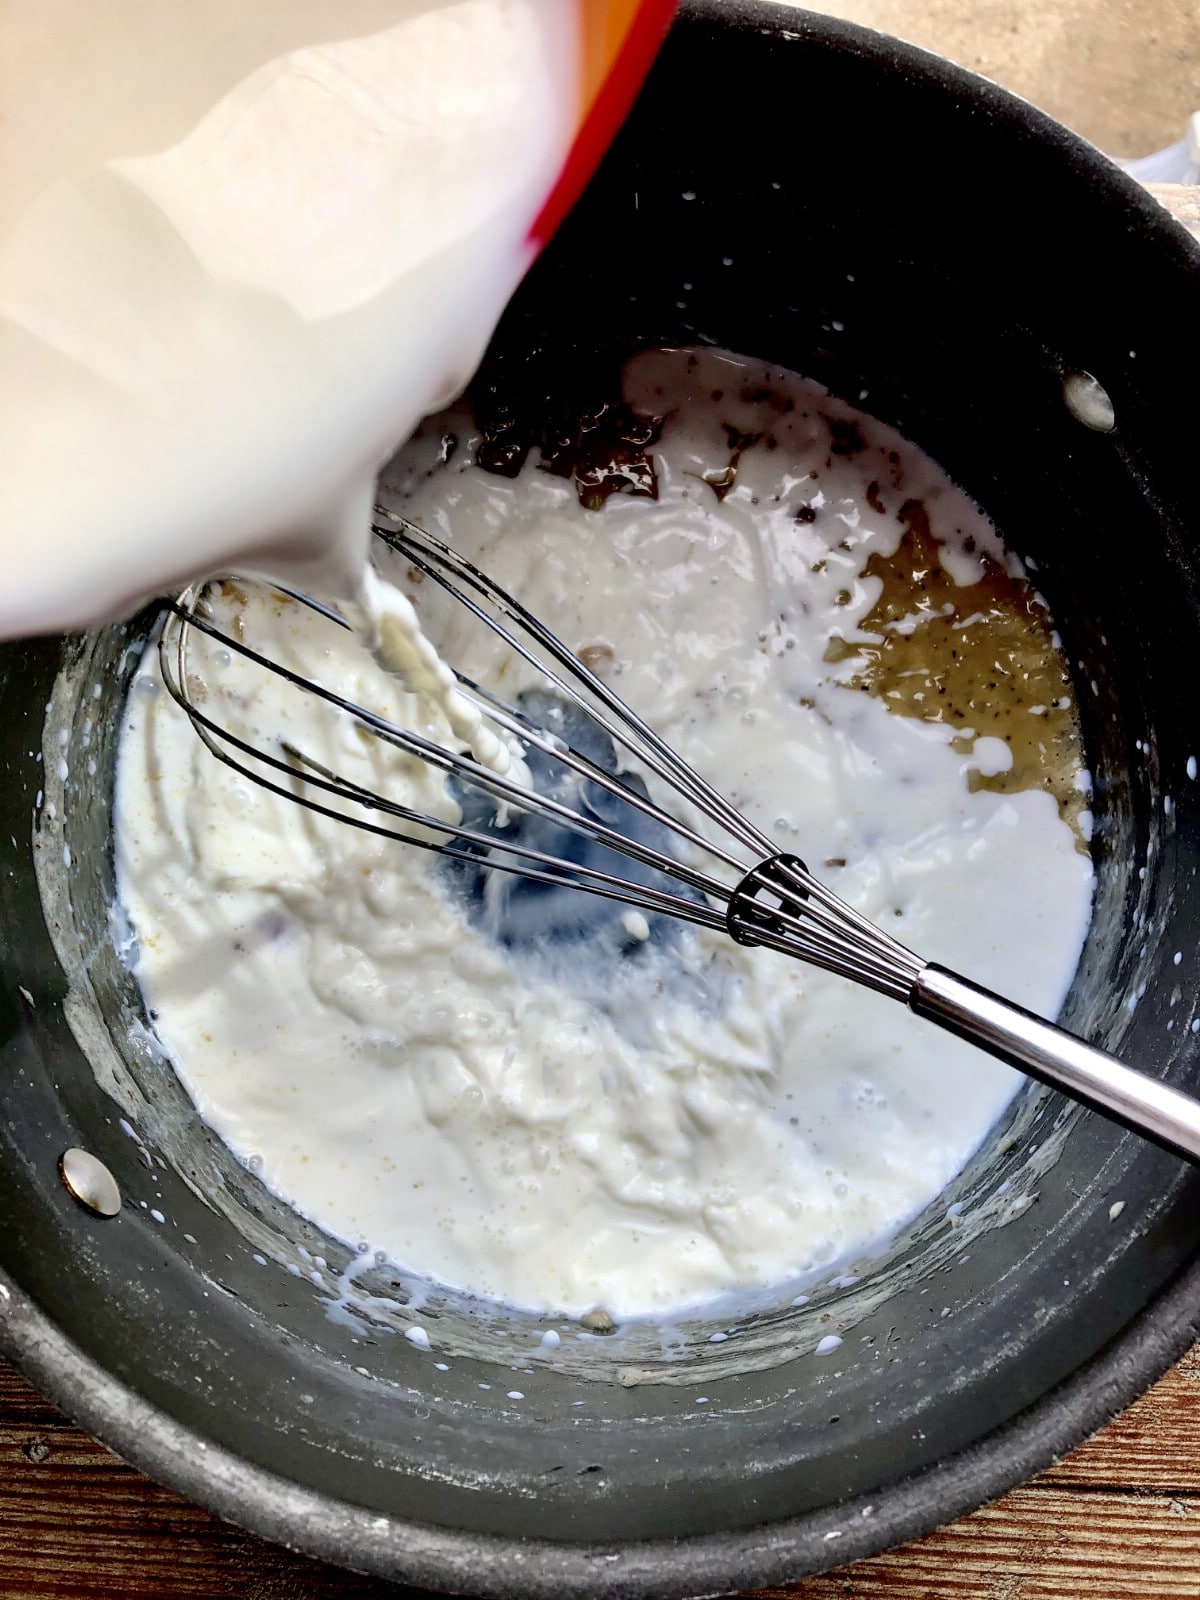 Adding milk to flour